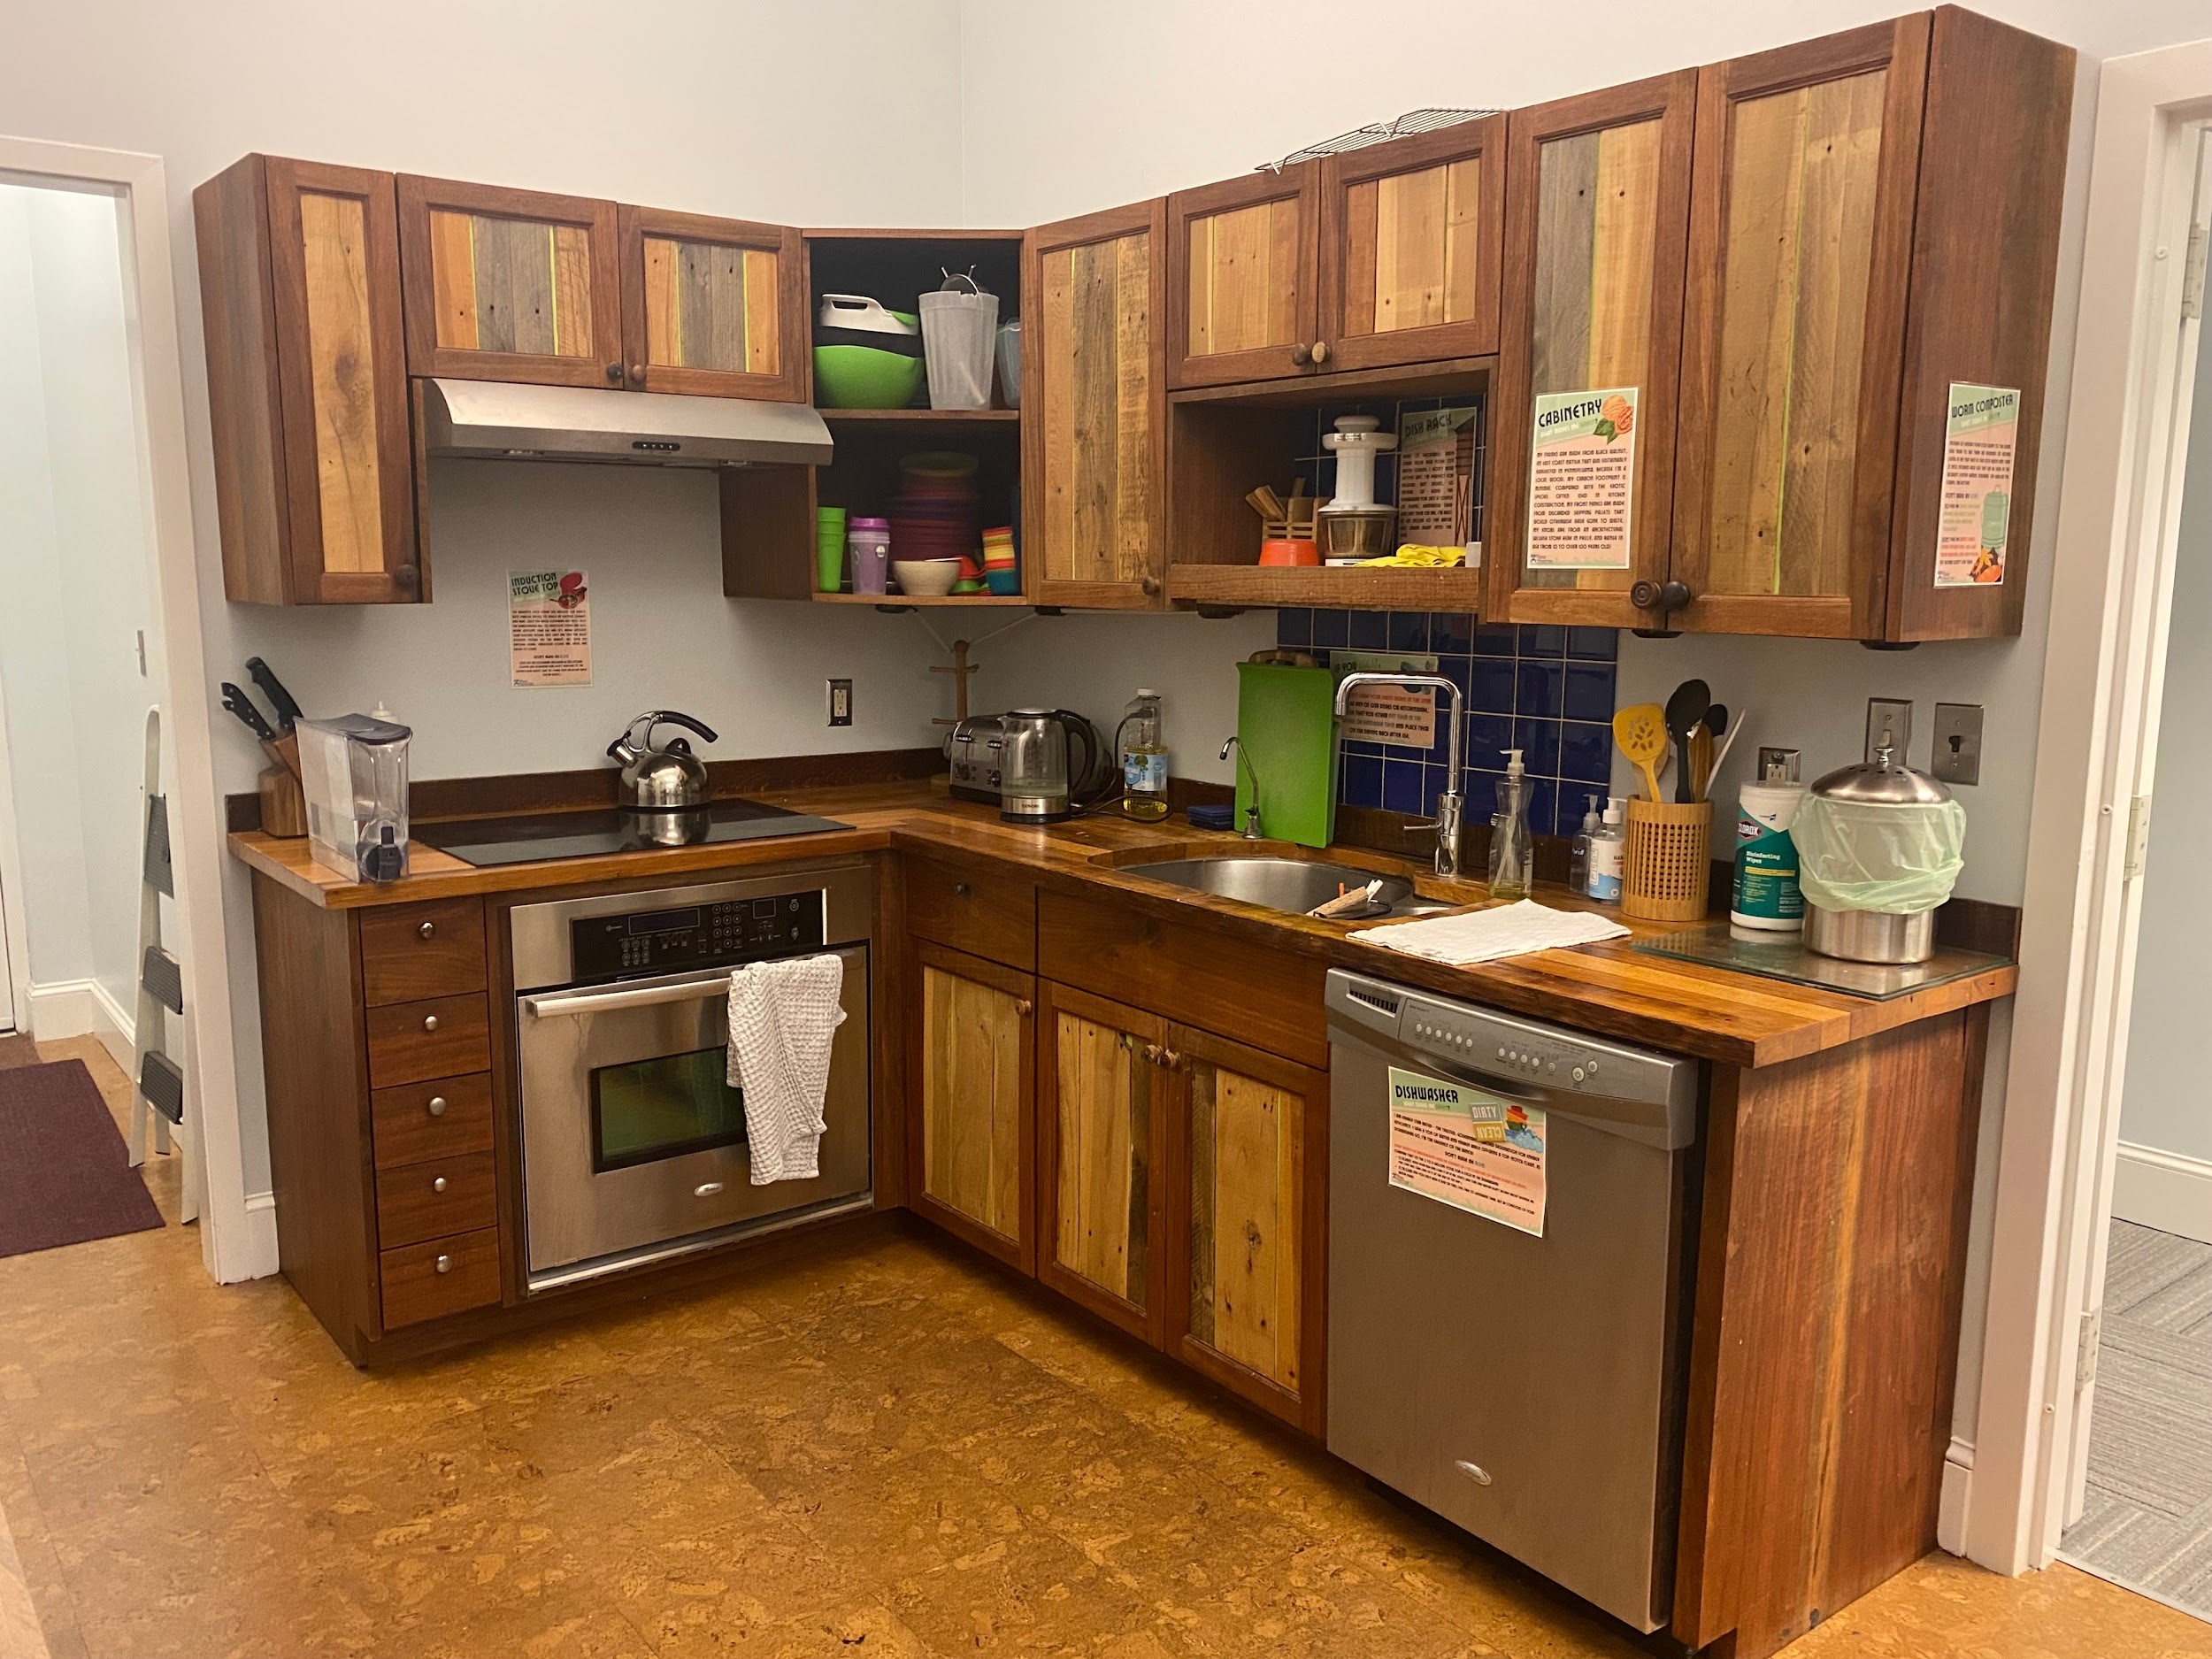 PWC Kitchen counters, cabinets, stove, and dishwasher